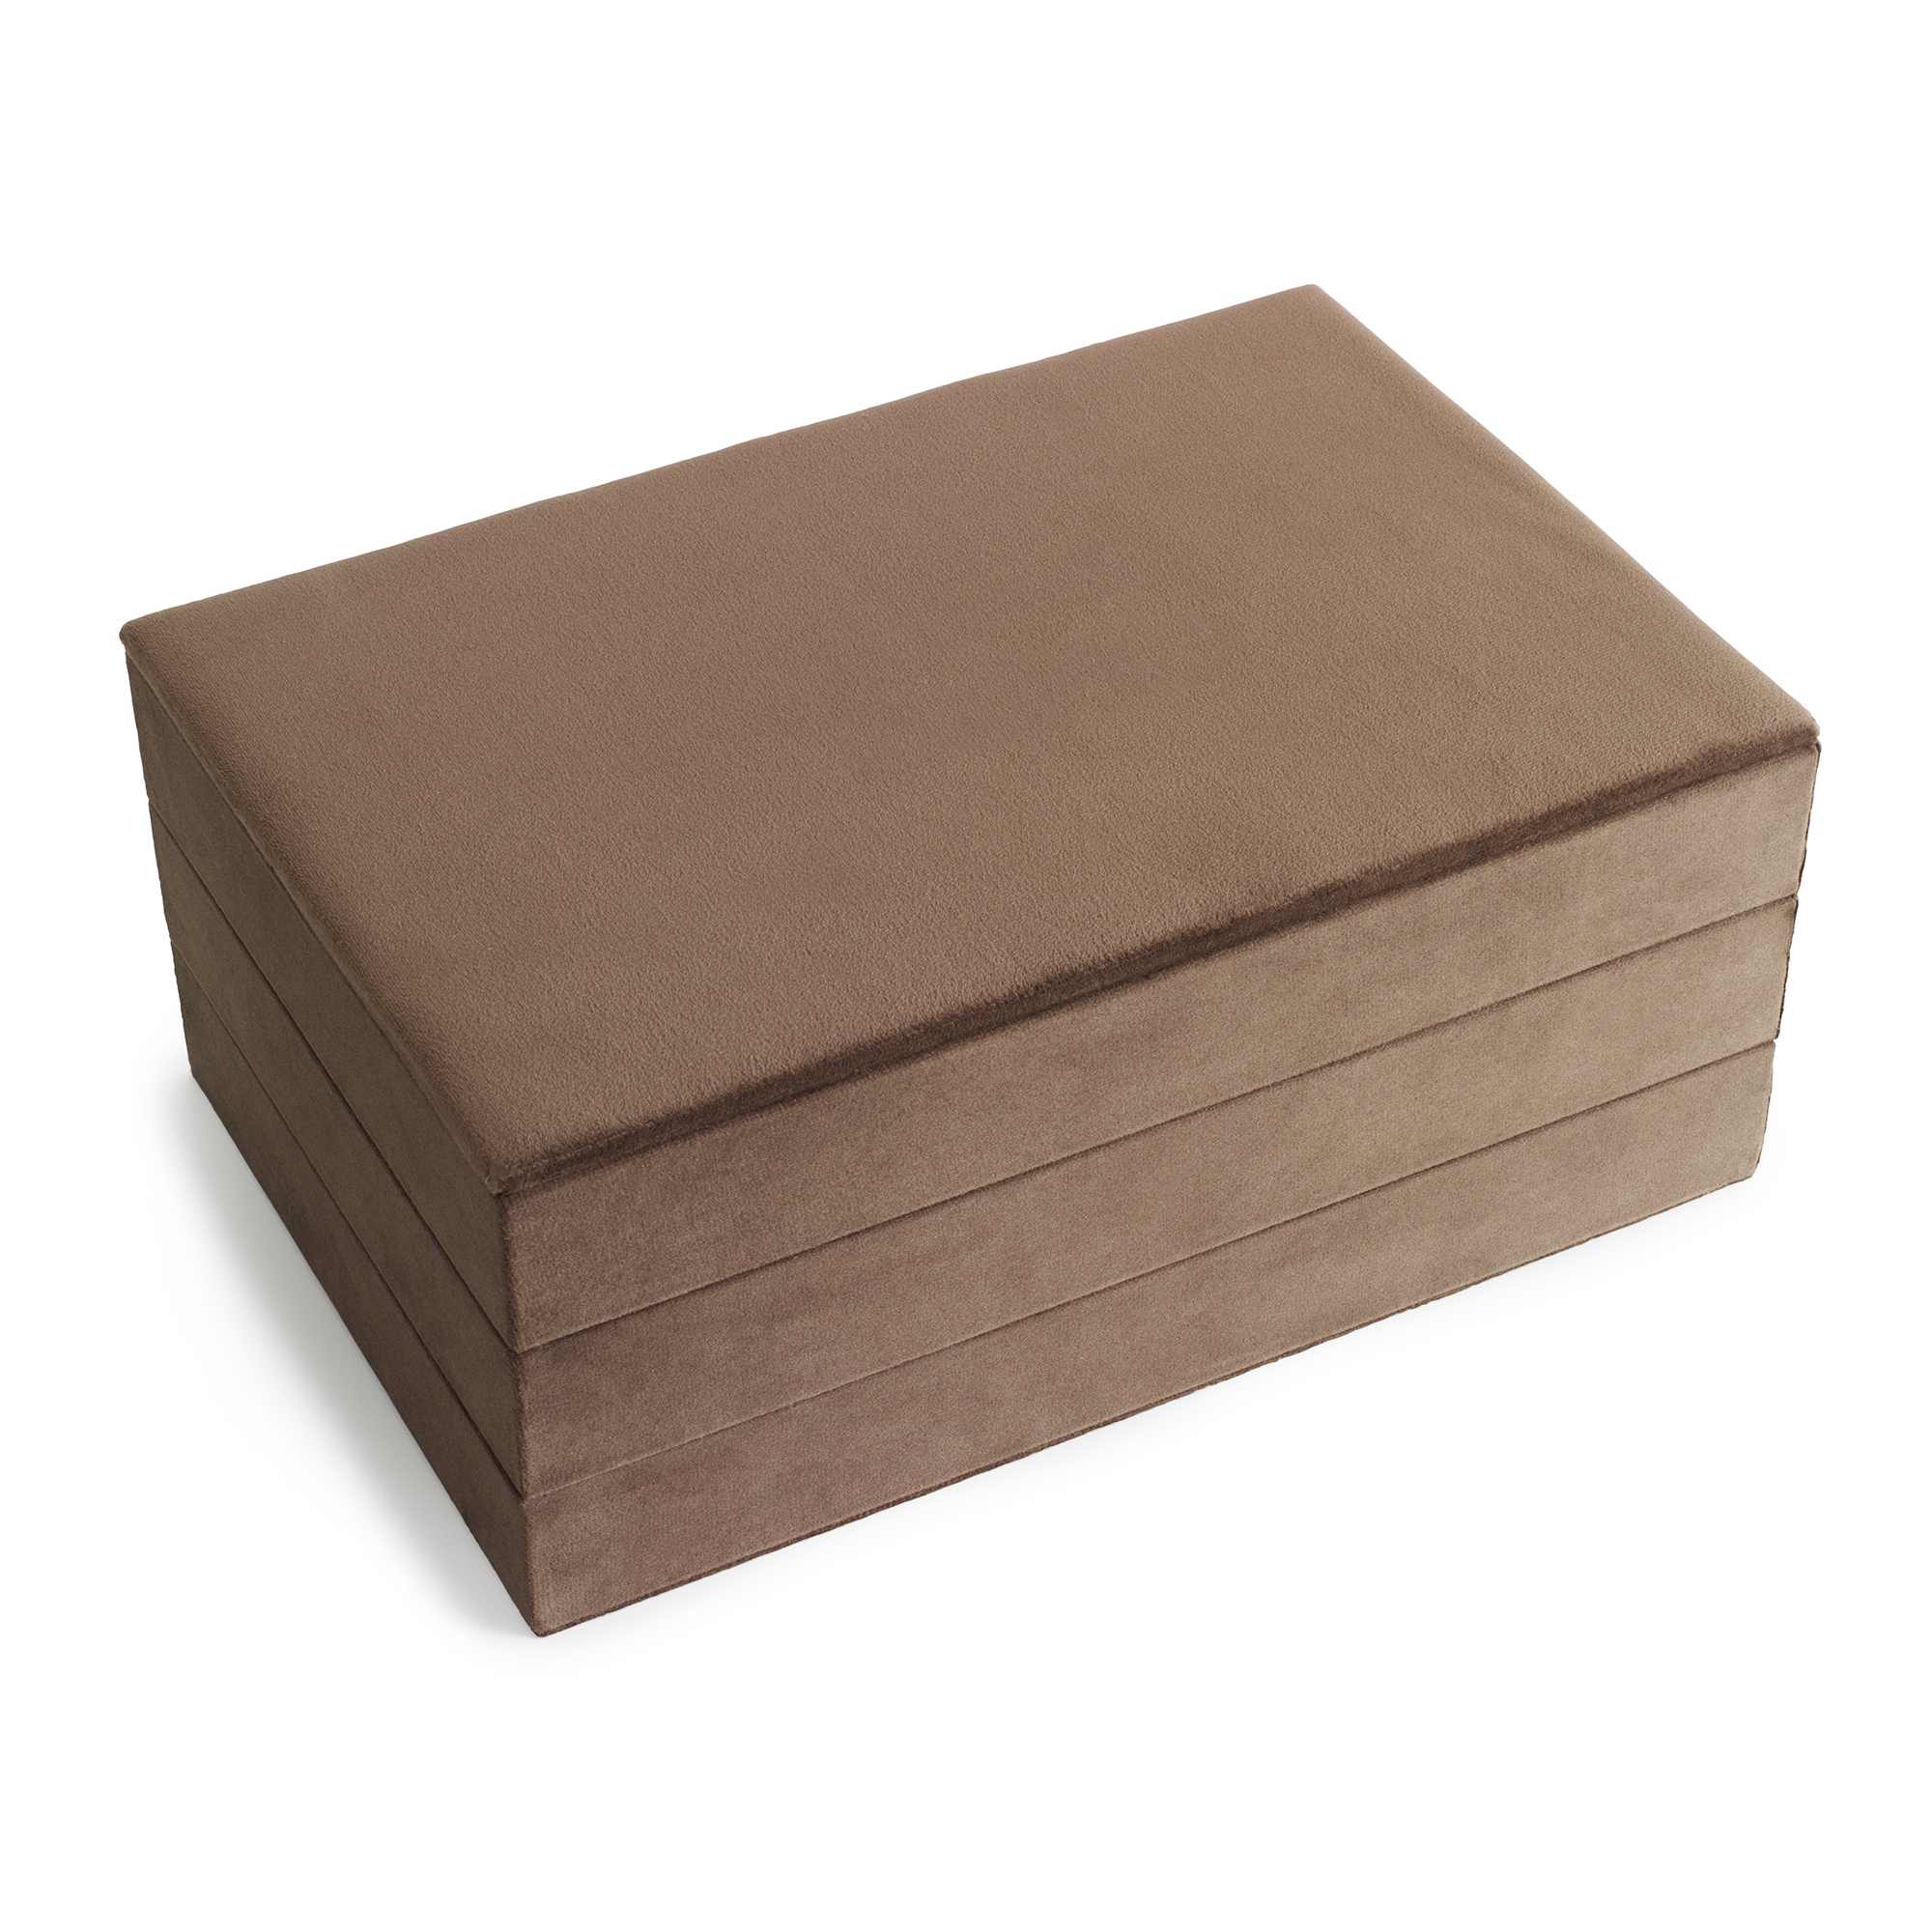 Se Vibholm - Brown Stacker box smykkeskrin hos Vibholm.dk